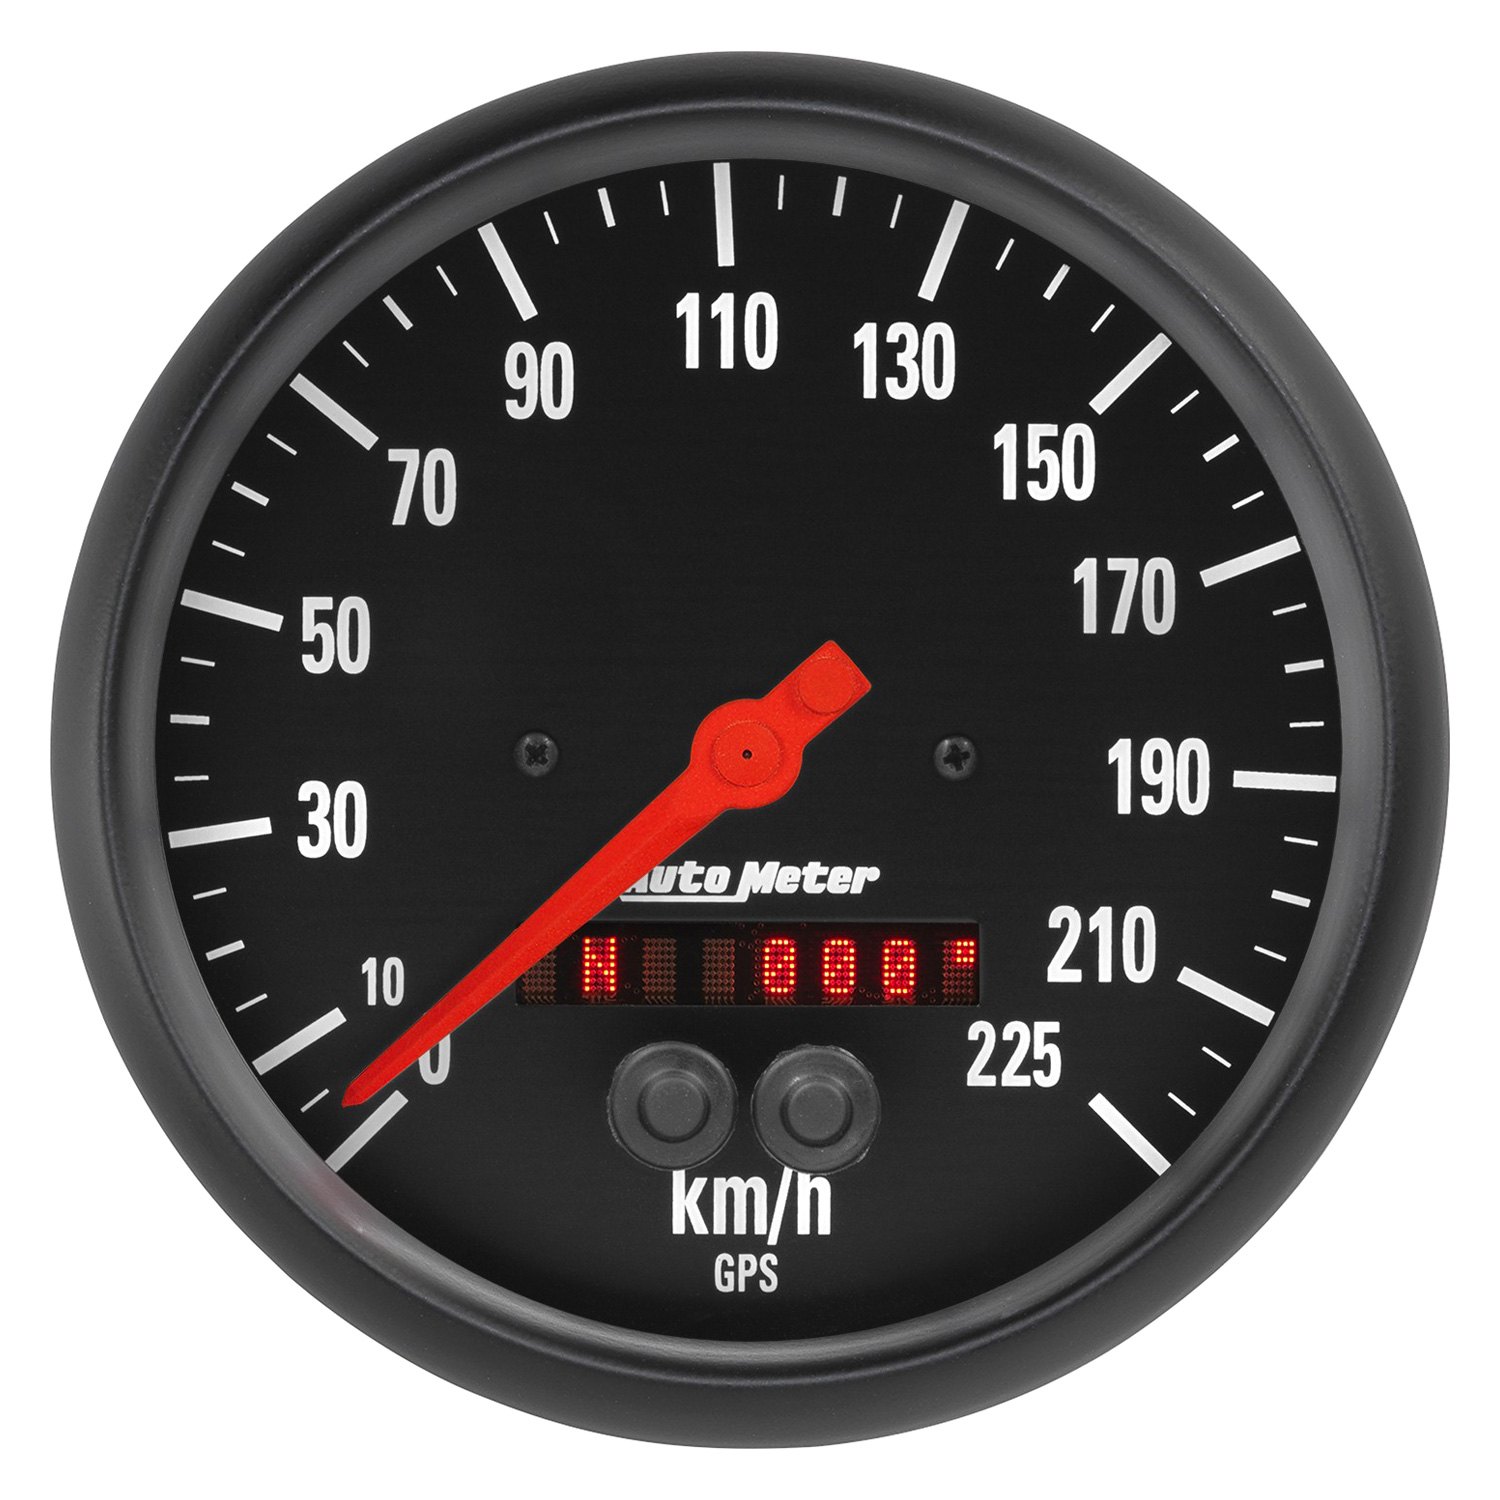 8 миль в час. GPS спидометр тахометр 85мм. Спидометр km/h mph. 140 На спидометре. GPS спидометр круглый для автомобиля.